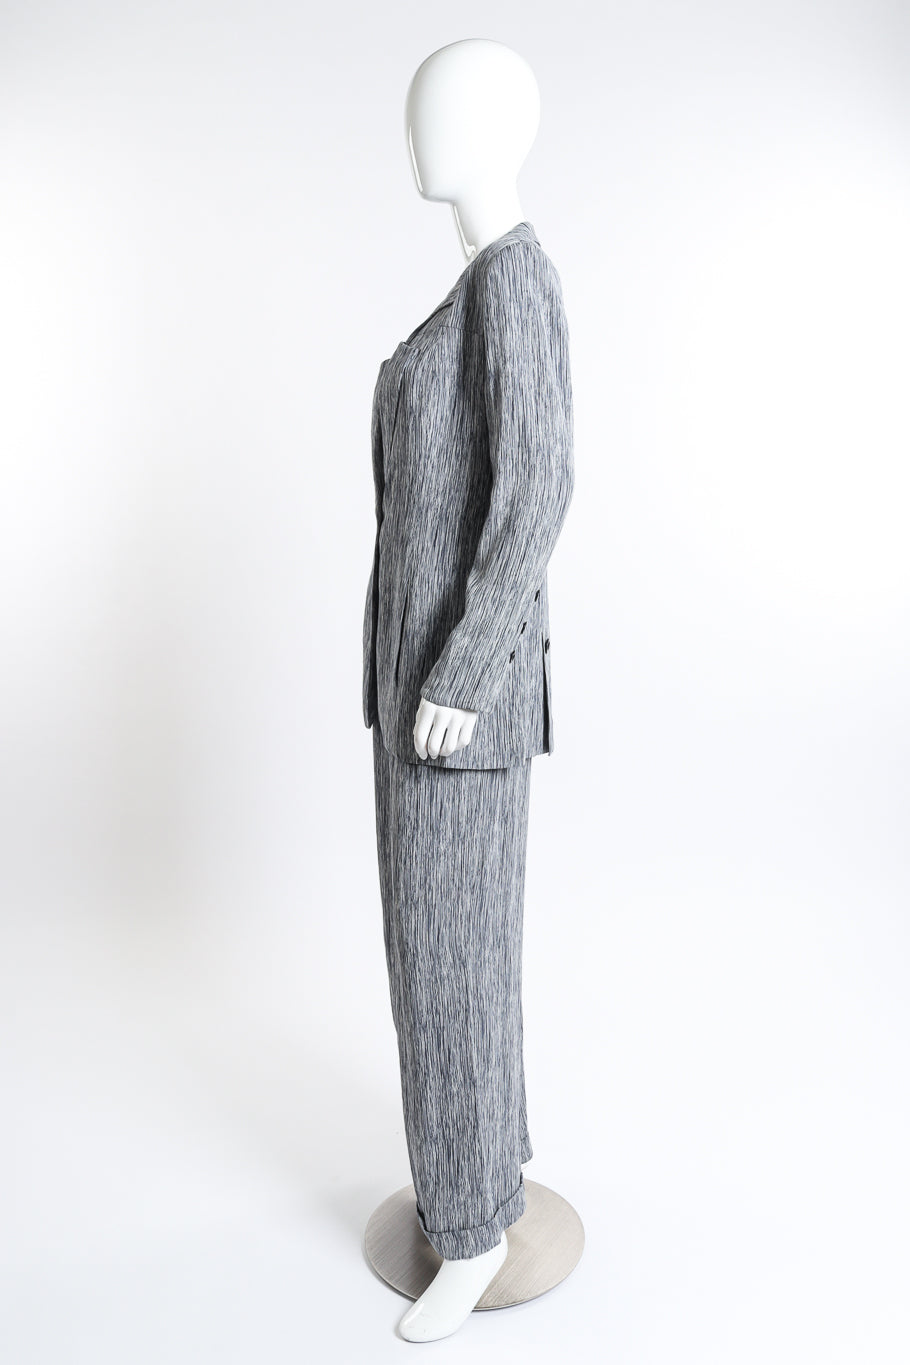 Chloé Woodgrain Stripe Jacket & Pant Set side on mannequin @recess la